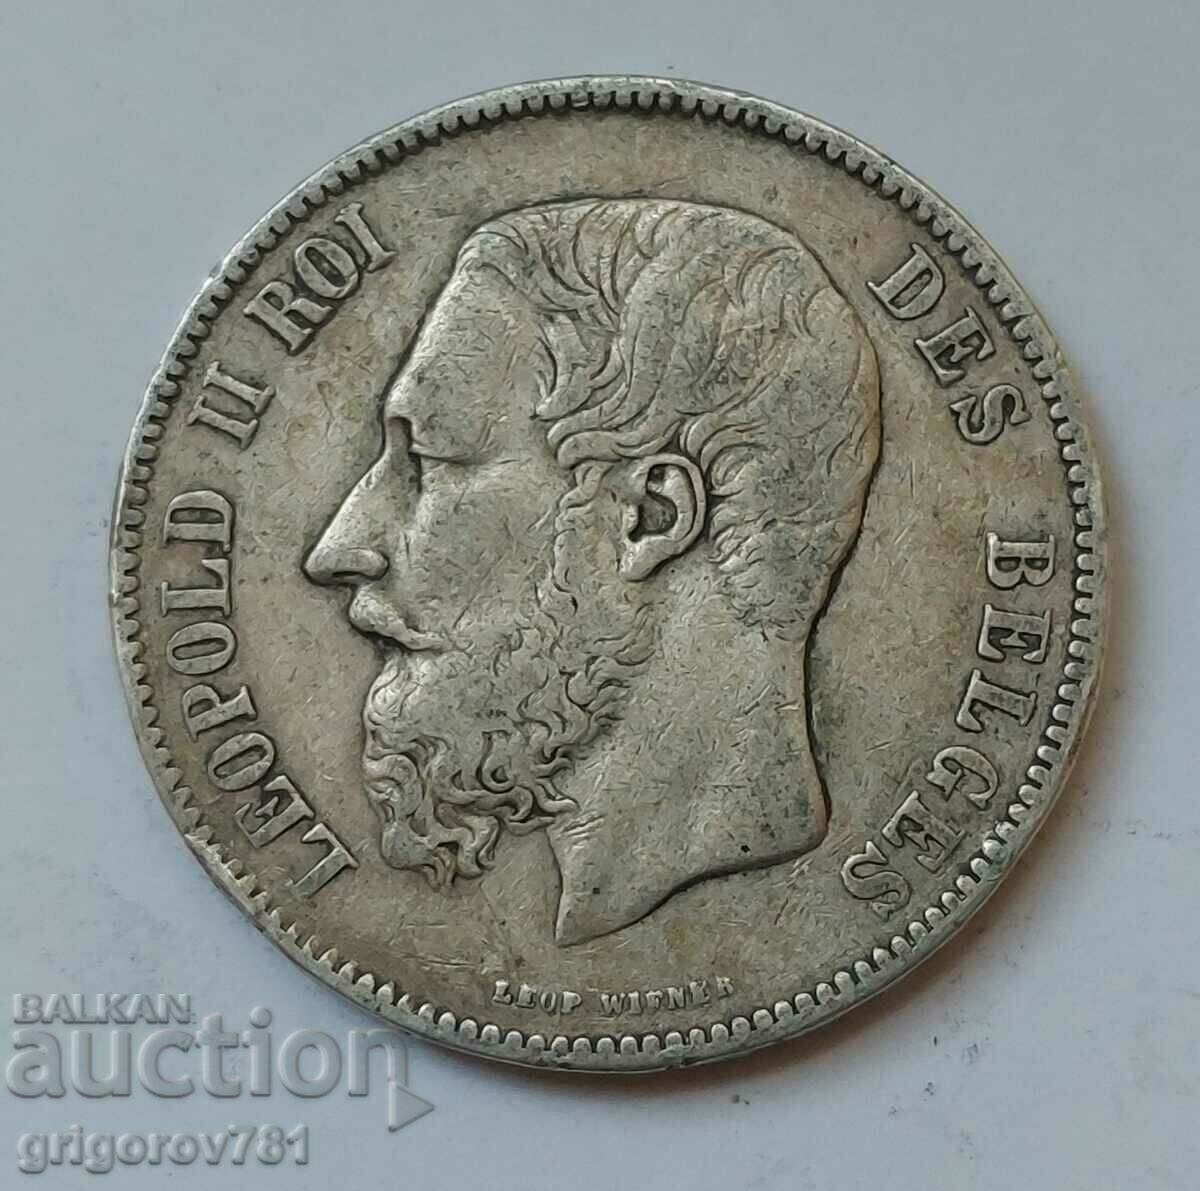 Ασημένιο 5 Φράγκα Βέλγιο 1873 - Ασημένιο νόμισμα #228